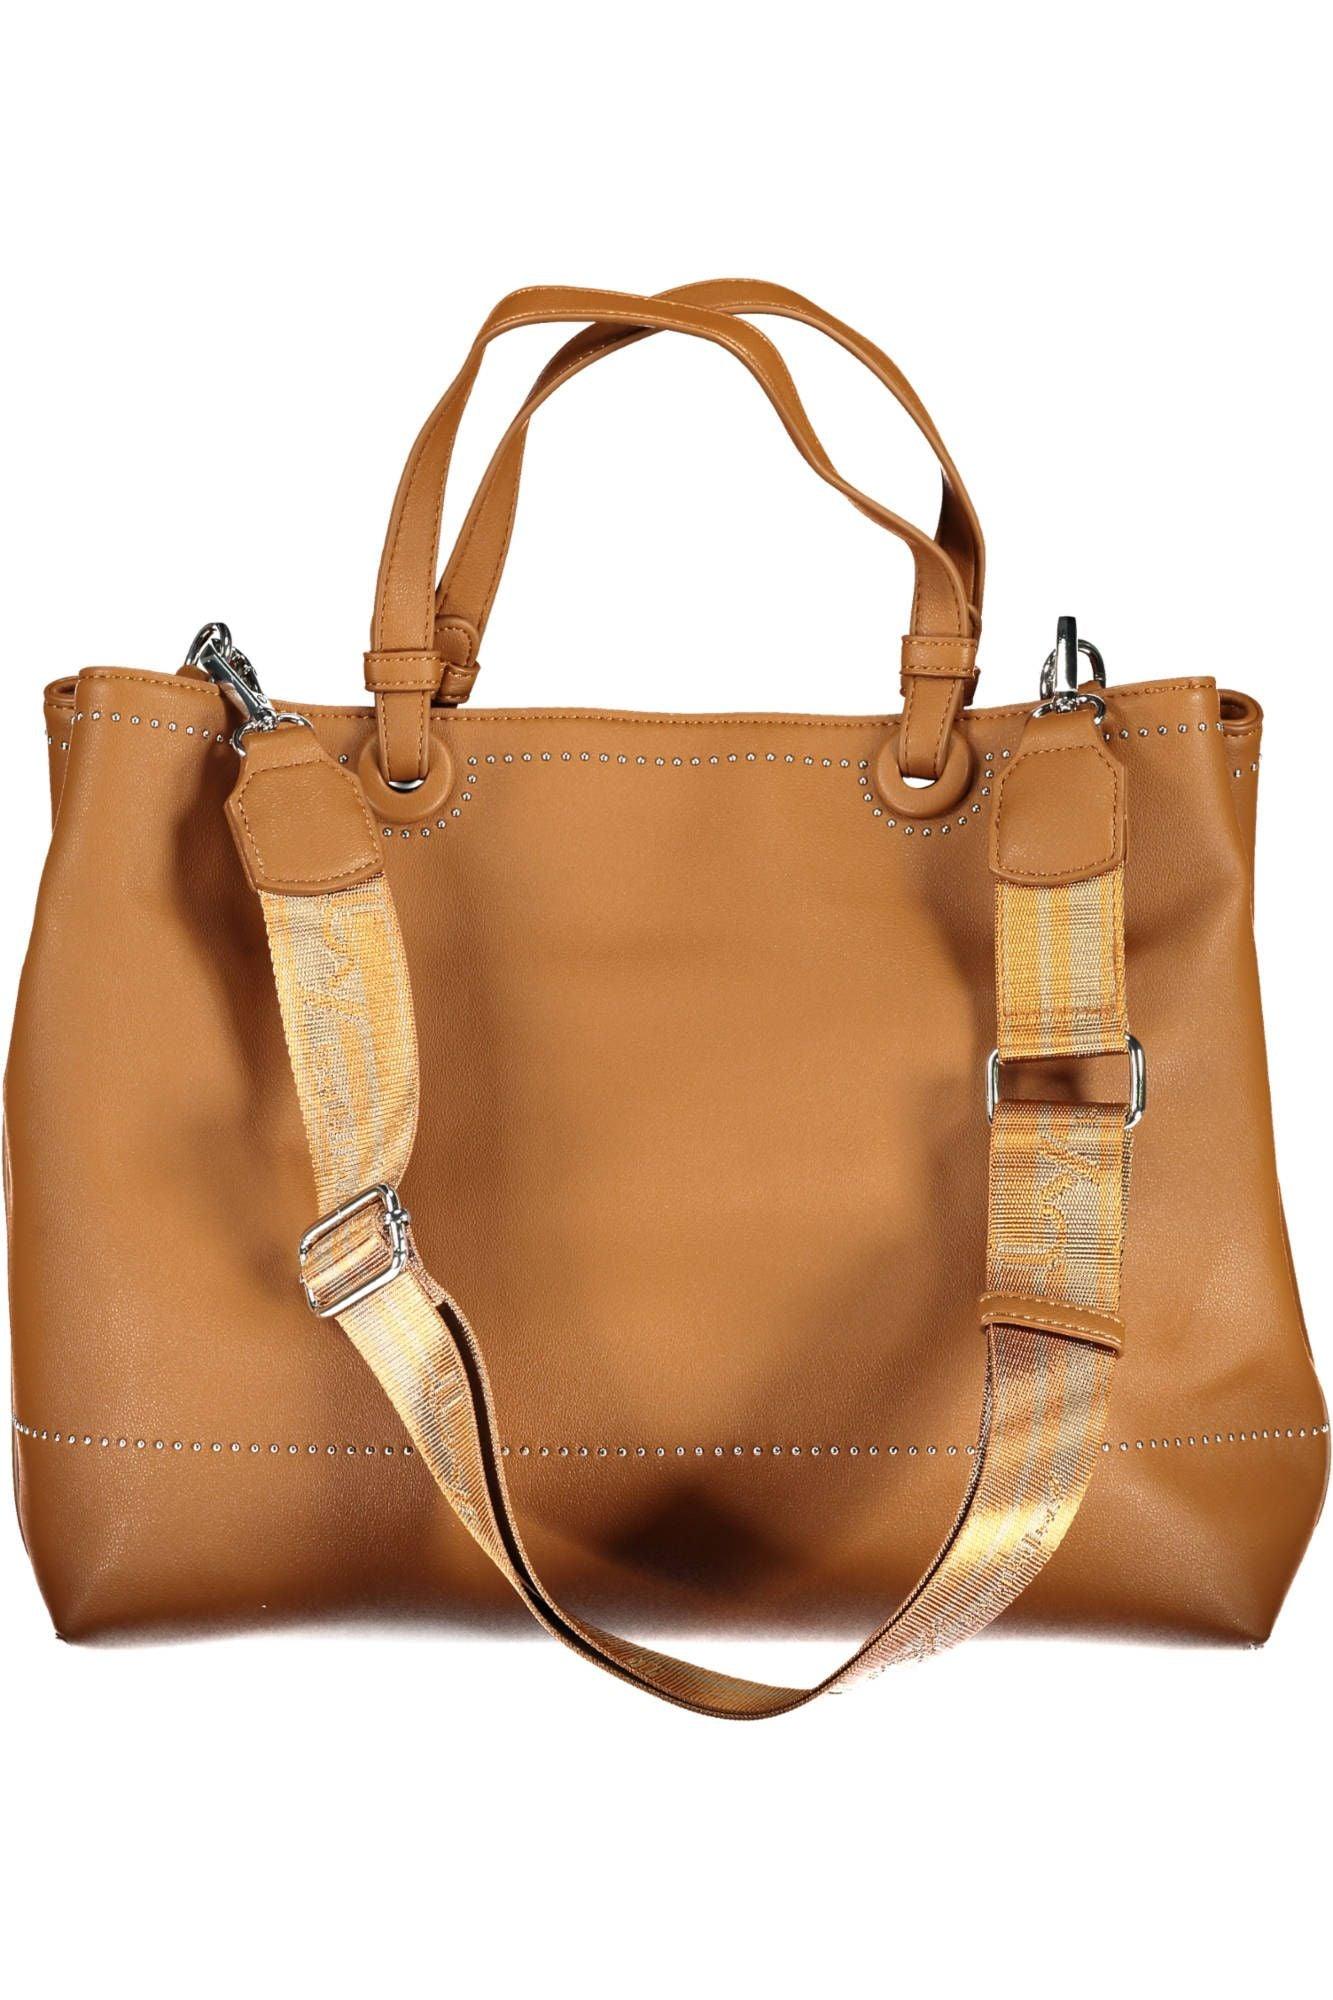 BYBLOS Elegant Two-Tone Brown Handbag with Logo Detail - PER.FASHION